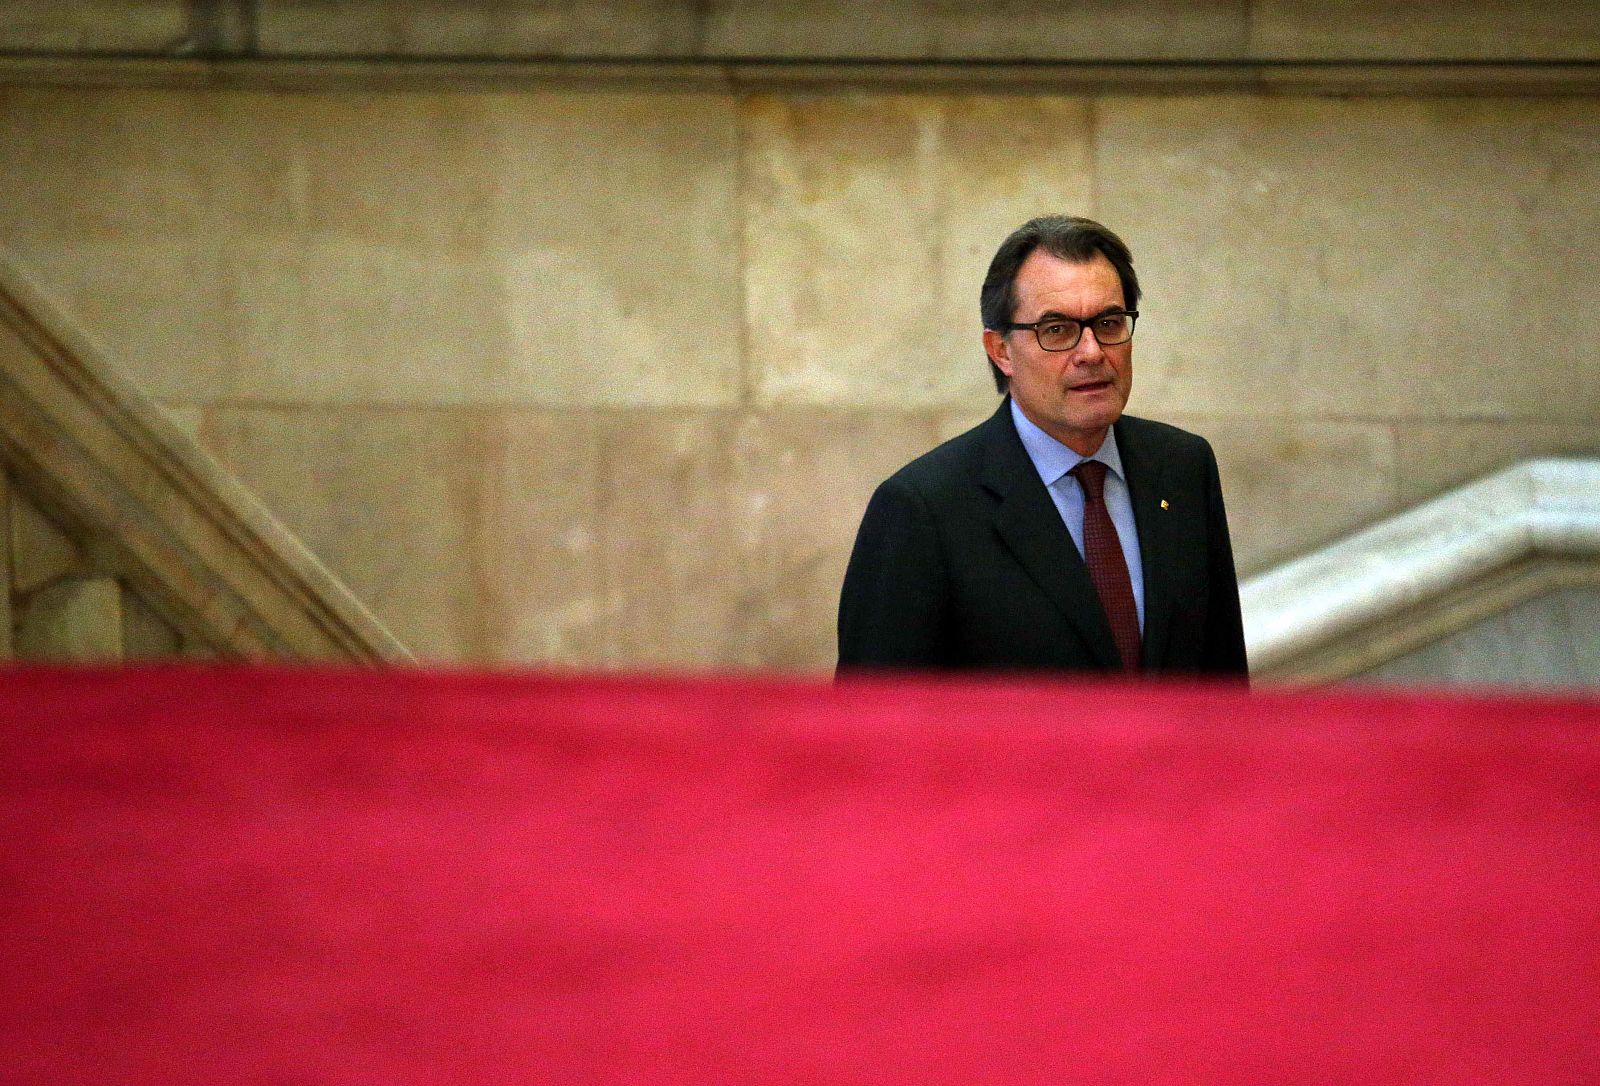 El presidente de la Generalitat, Artur Mas, en el Parlament catalán.